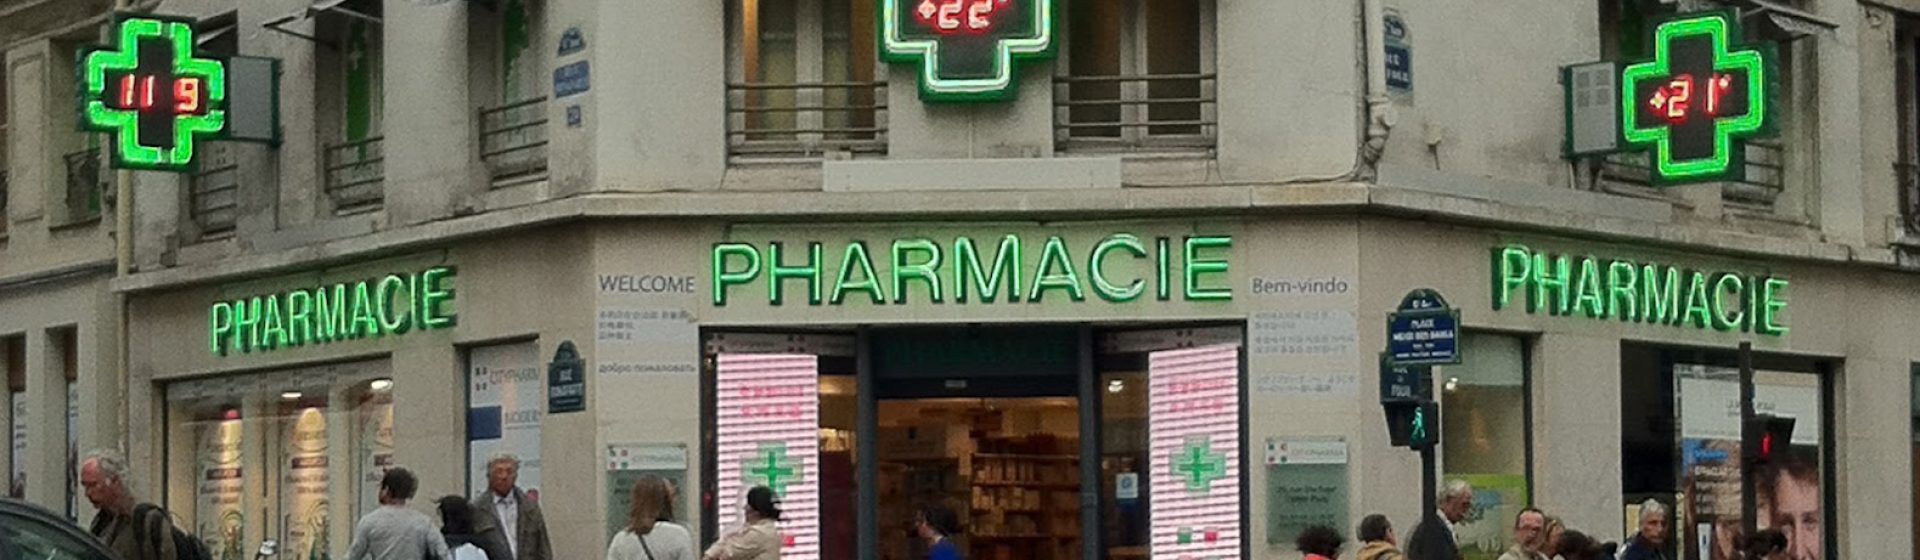 Service de pharmacie à La Roche sur Yon – Pharmacie Basset